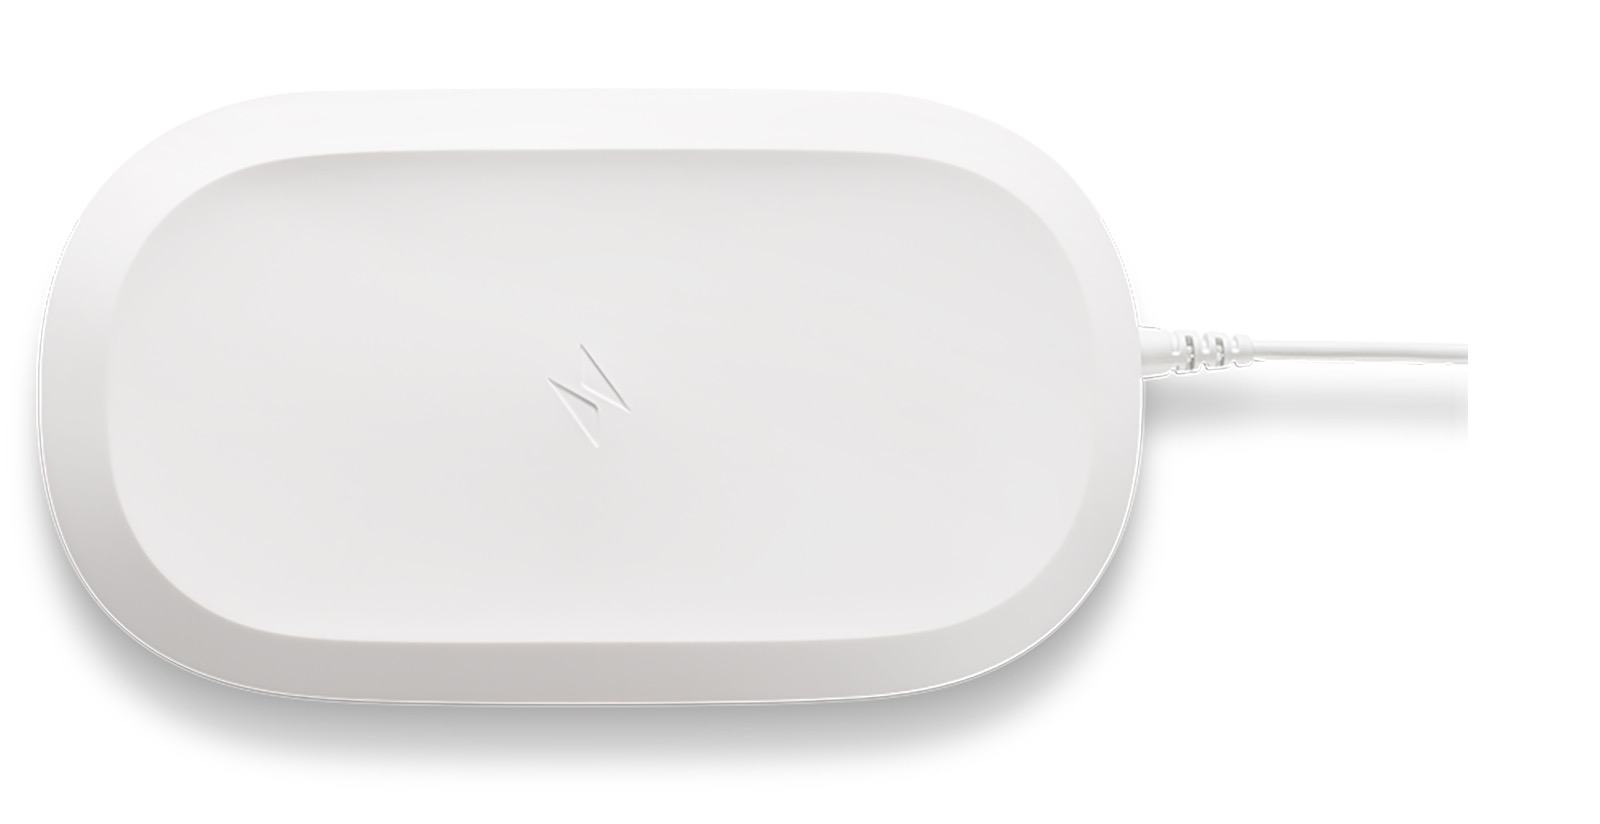 SanDisk iXpand Wireless Charger, backup locale e carica tutto in uno